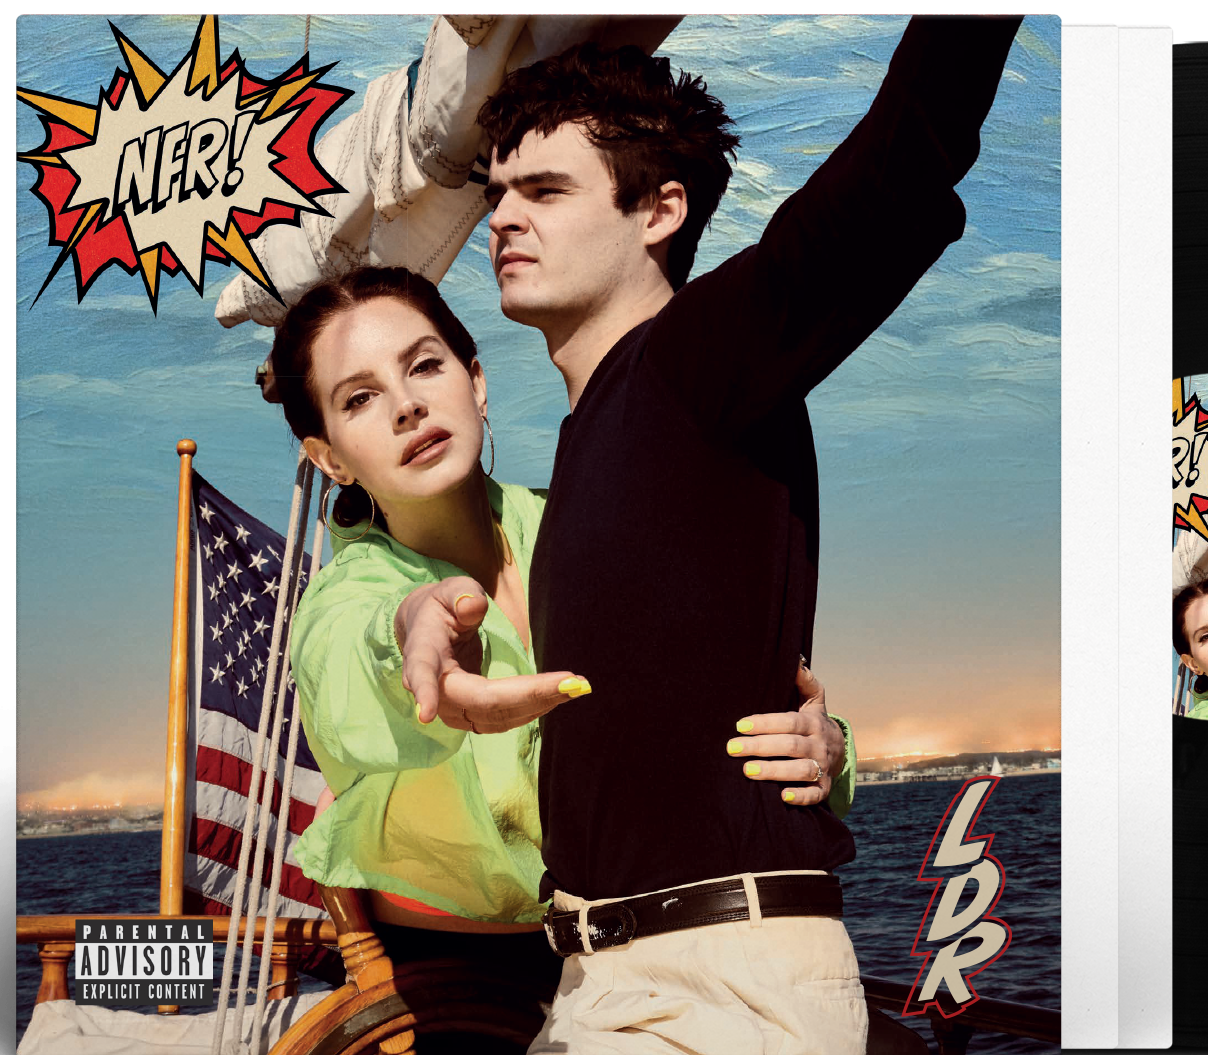 Lana Del Rey —"NFR!" - New 2 LP Record 2019 Polydor 180 gram Black Vinyl - Pop Rock / Dream Pop